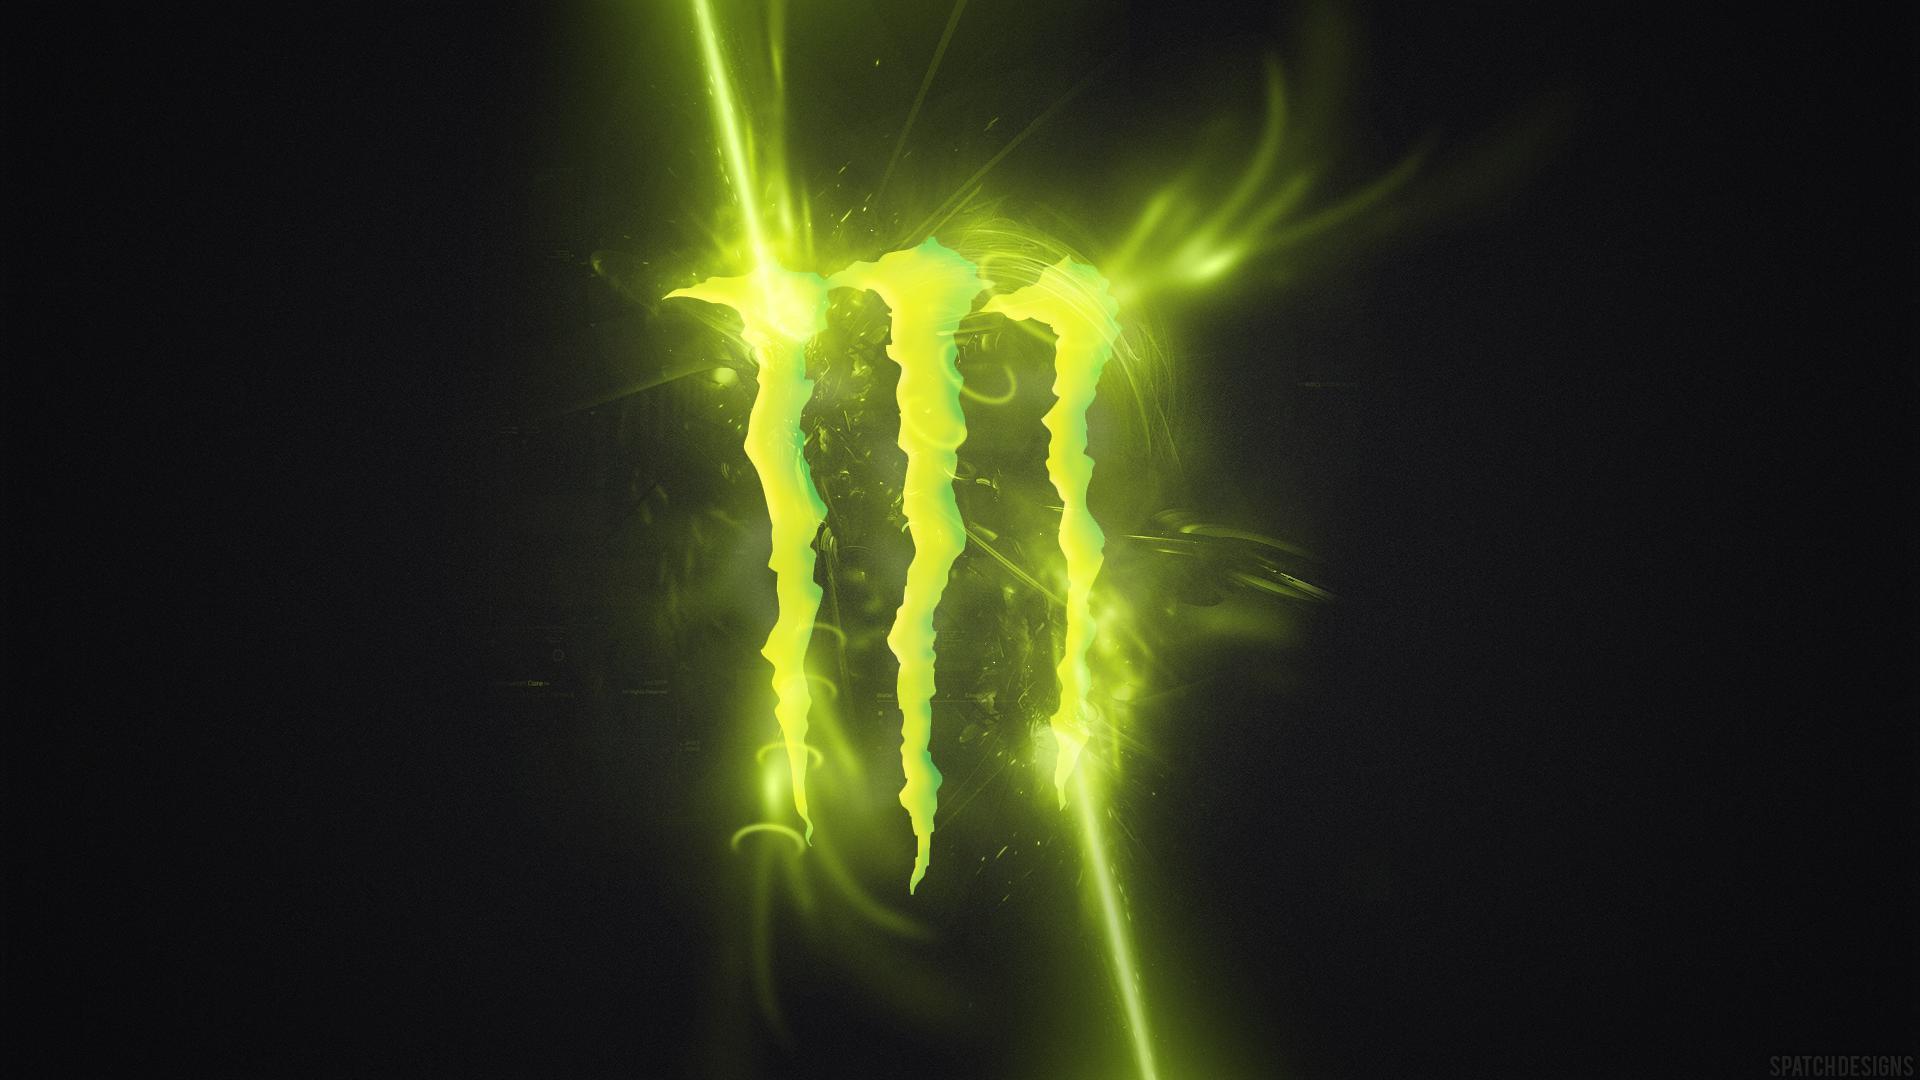 Monster Energy Wallpaper 2015 HD